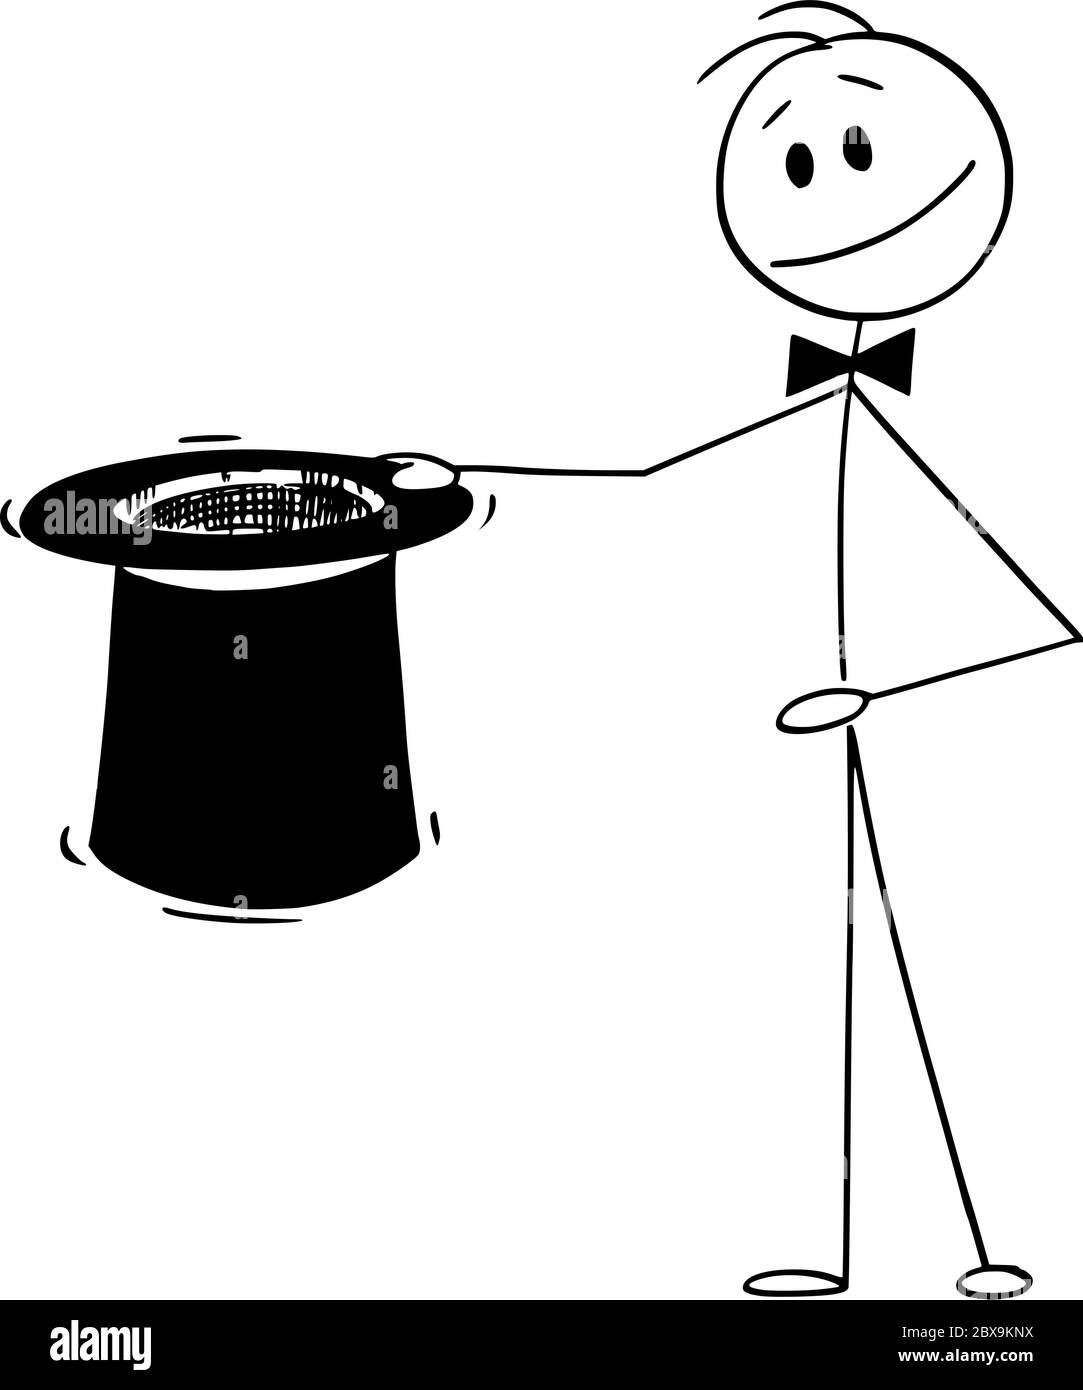 Vettore cartoon figura disegno disegno disegno concettuale di mago tenendo grande cappello nero top pronto a fare qualche magia. Illustrazione Vettoriale